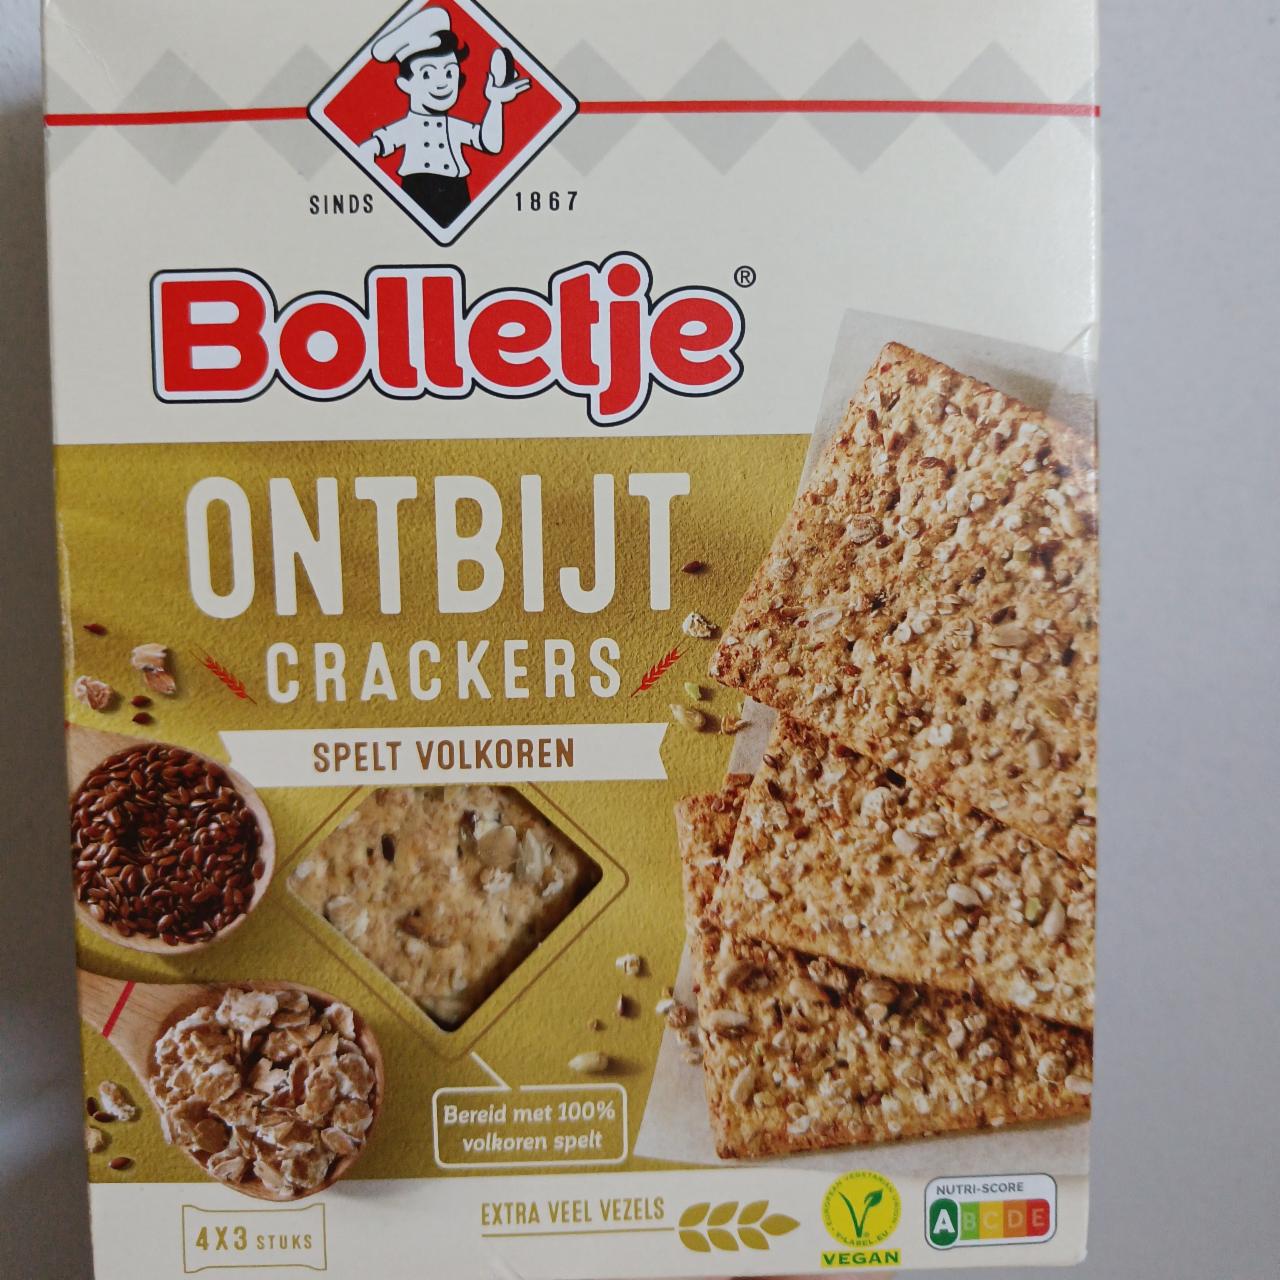 Фото - Цельнозерновые крекеры ontbijt crackers spelt volkoren Bolletje